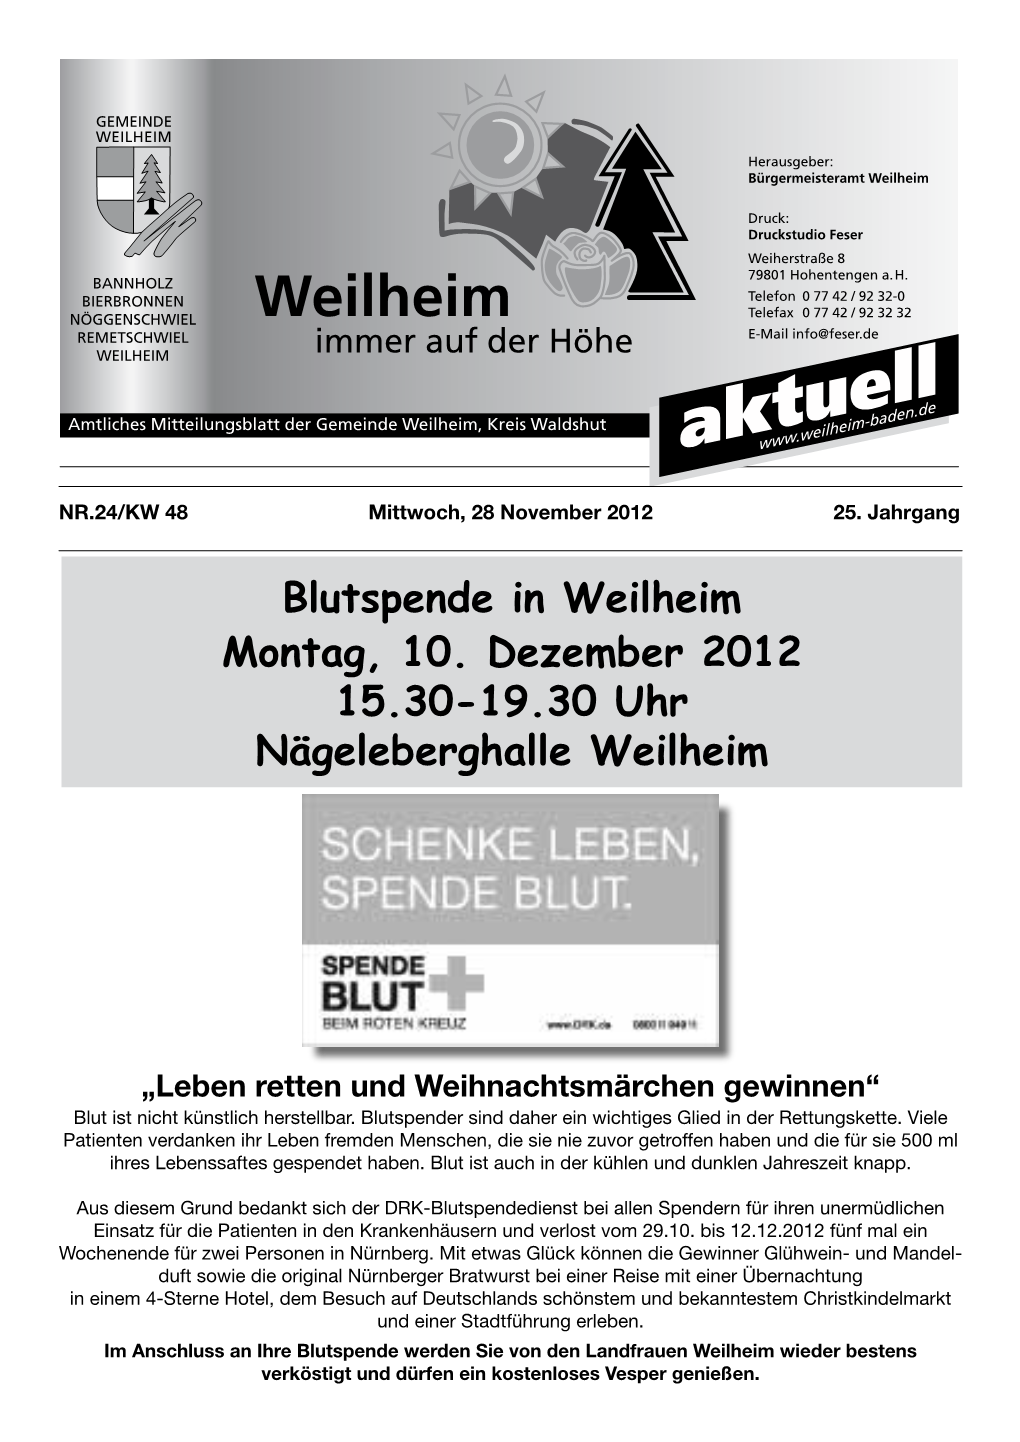 Blutspende in Weilheim Montag, 10. Dezember 2012 15.30-19.30 Uhr Nägeleberghalle Weilheim